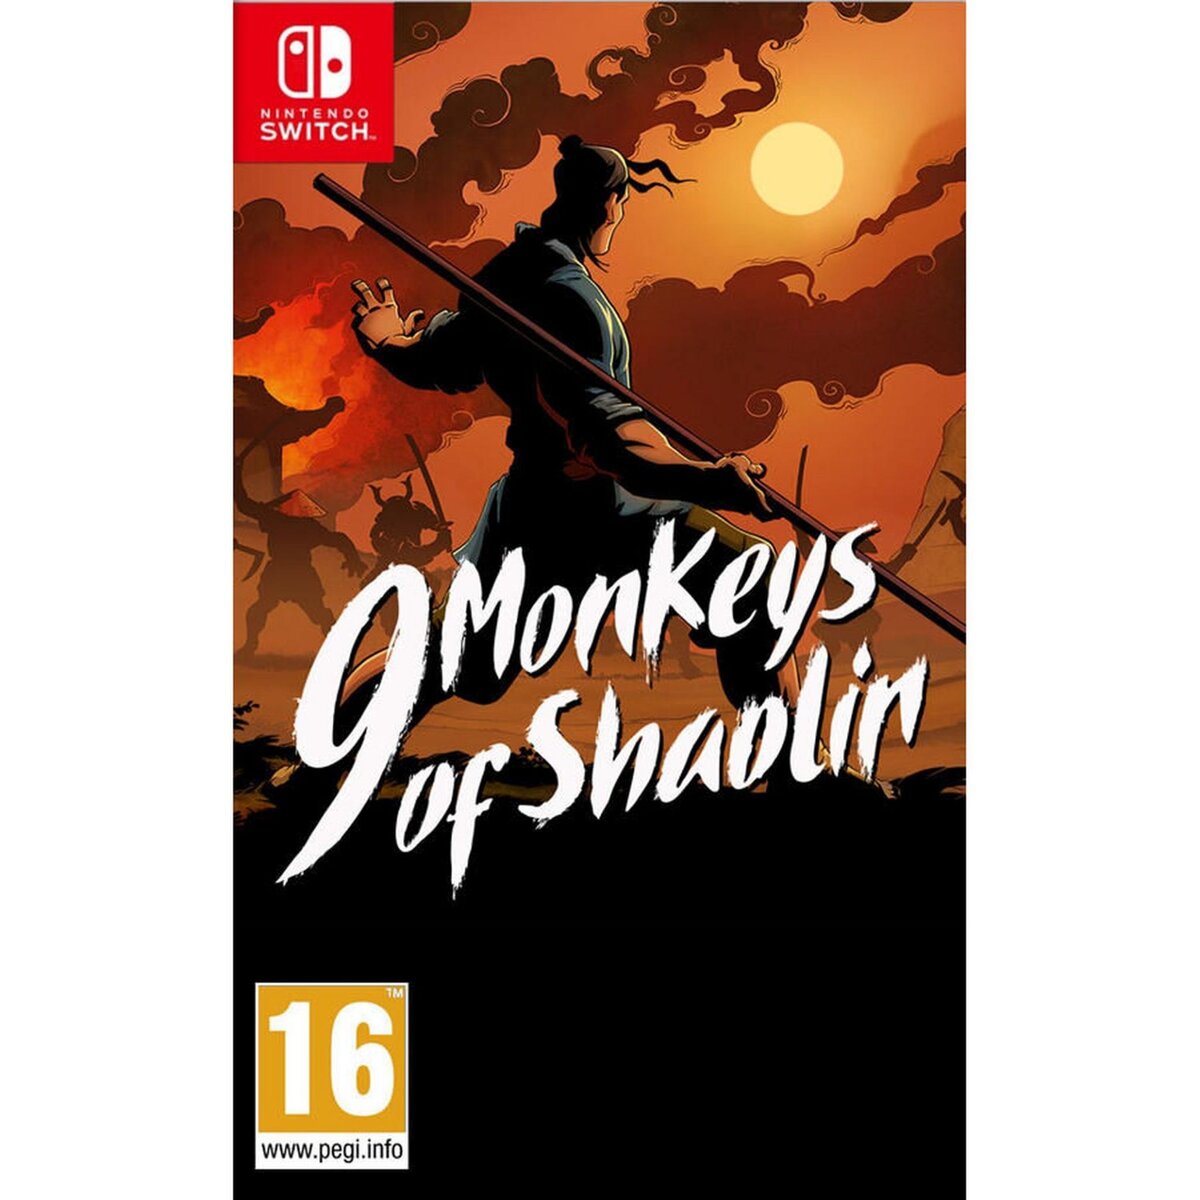 KOCH MEDIA 9 Monkeys of Shaolin Nintendo Switch